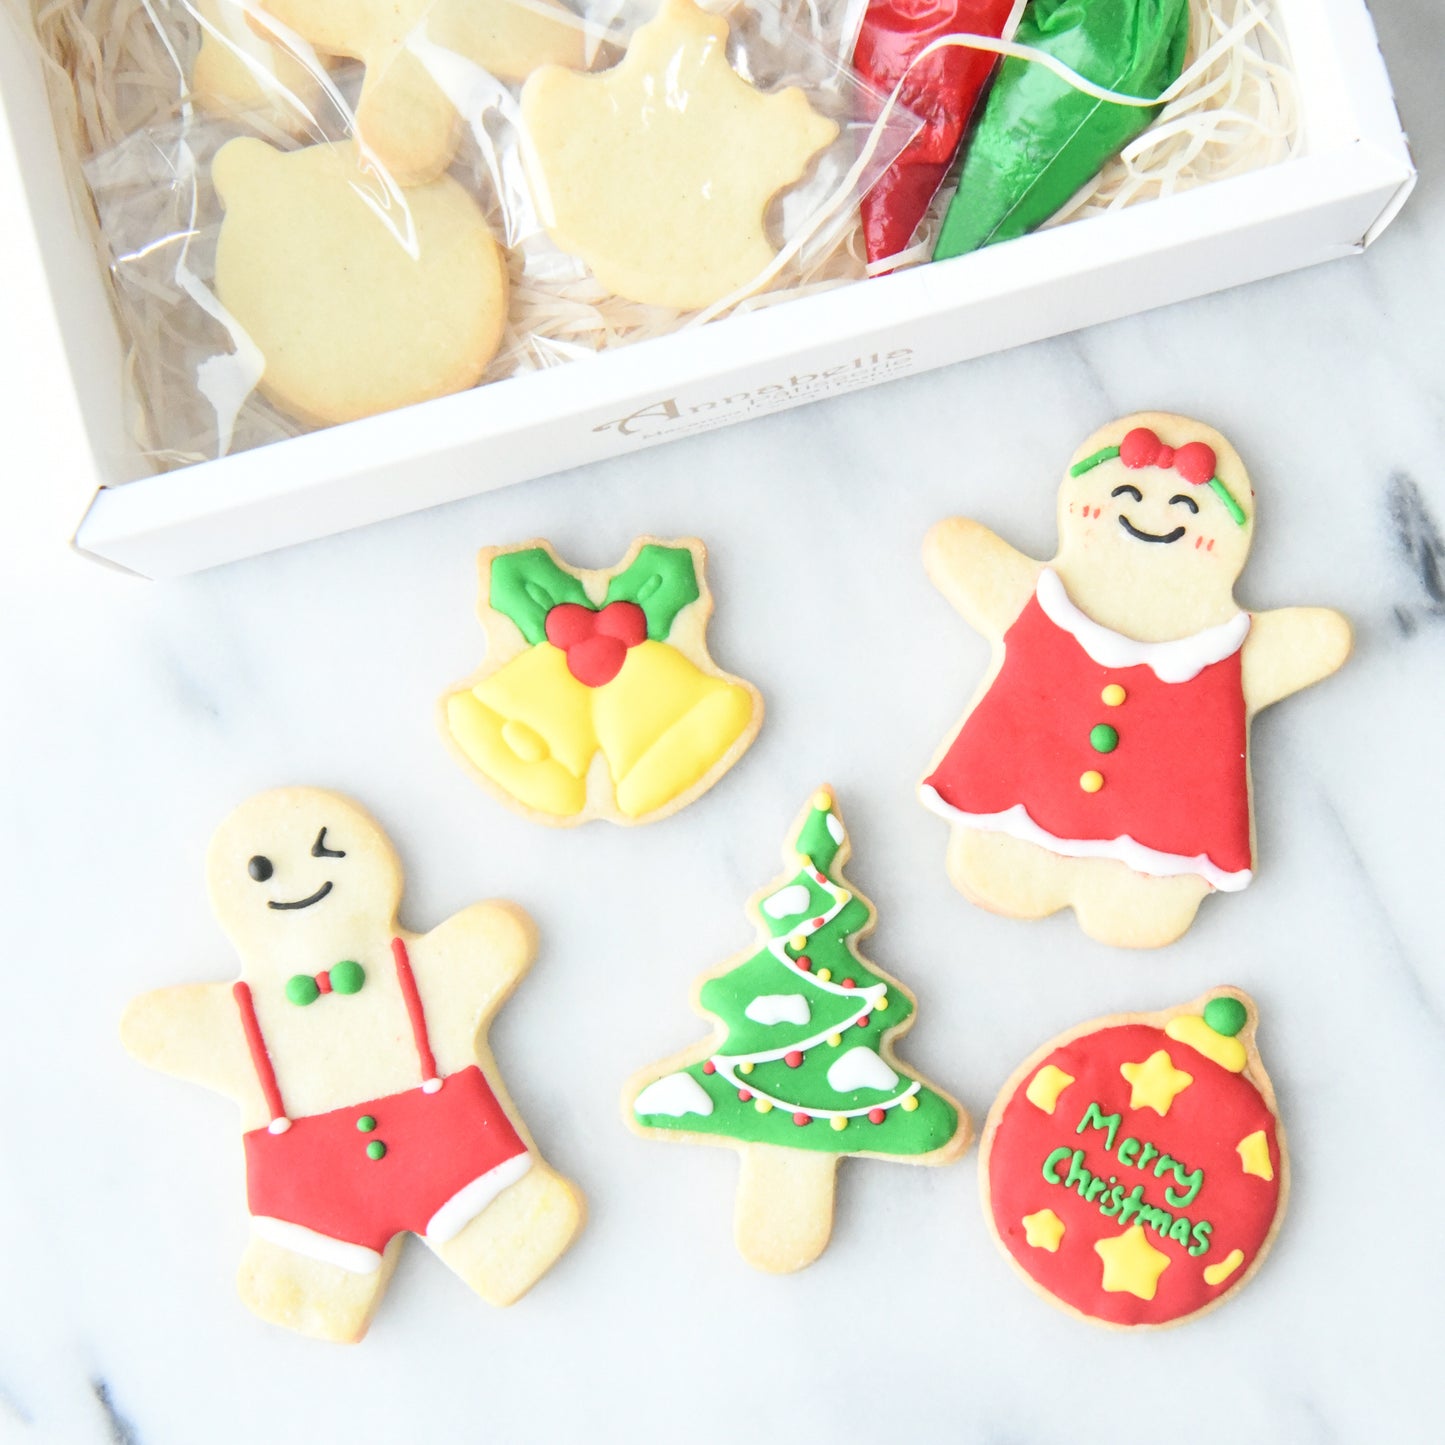 Ho ho ho! Merry Christmas!  | DIY Butter Cookie Set | $21.90 nett only